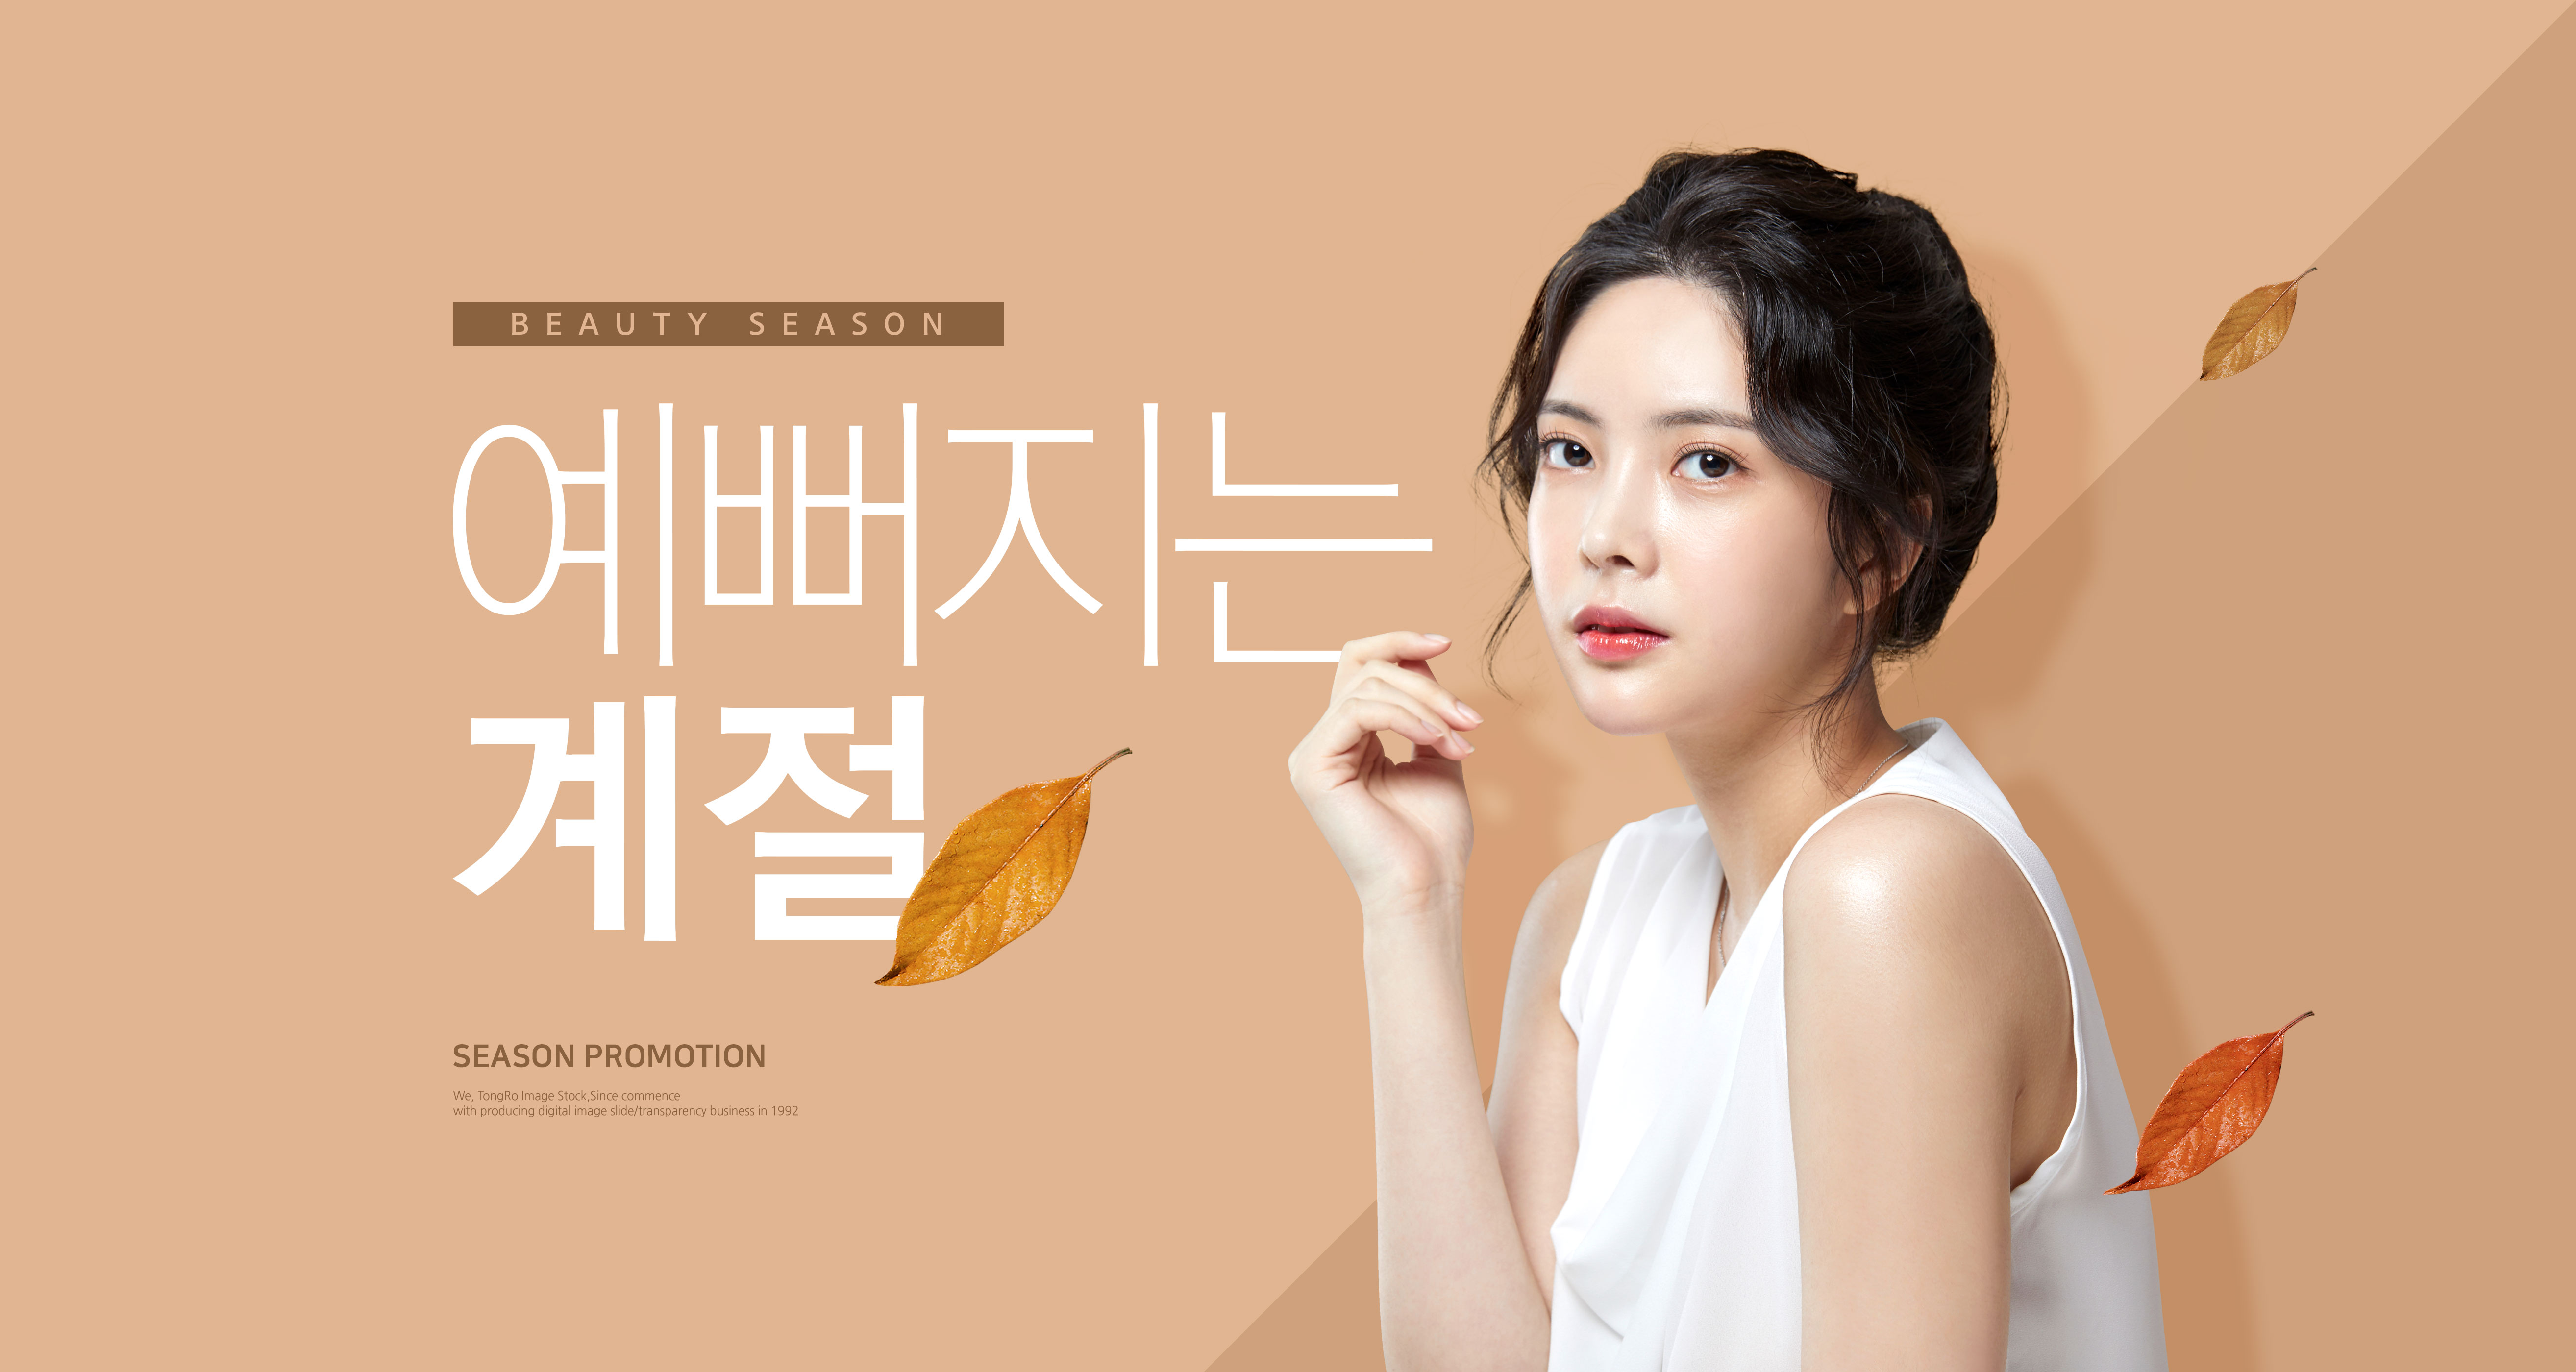 秋季化妆品促销美女广告Banner海报设计模板插图